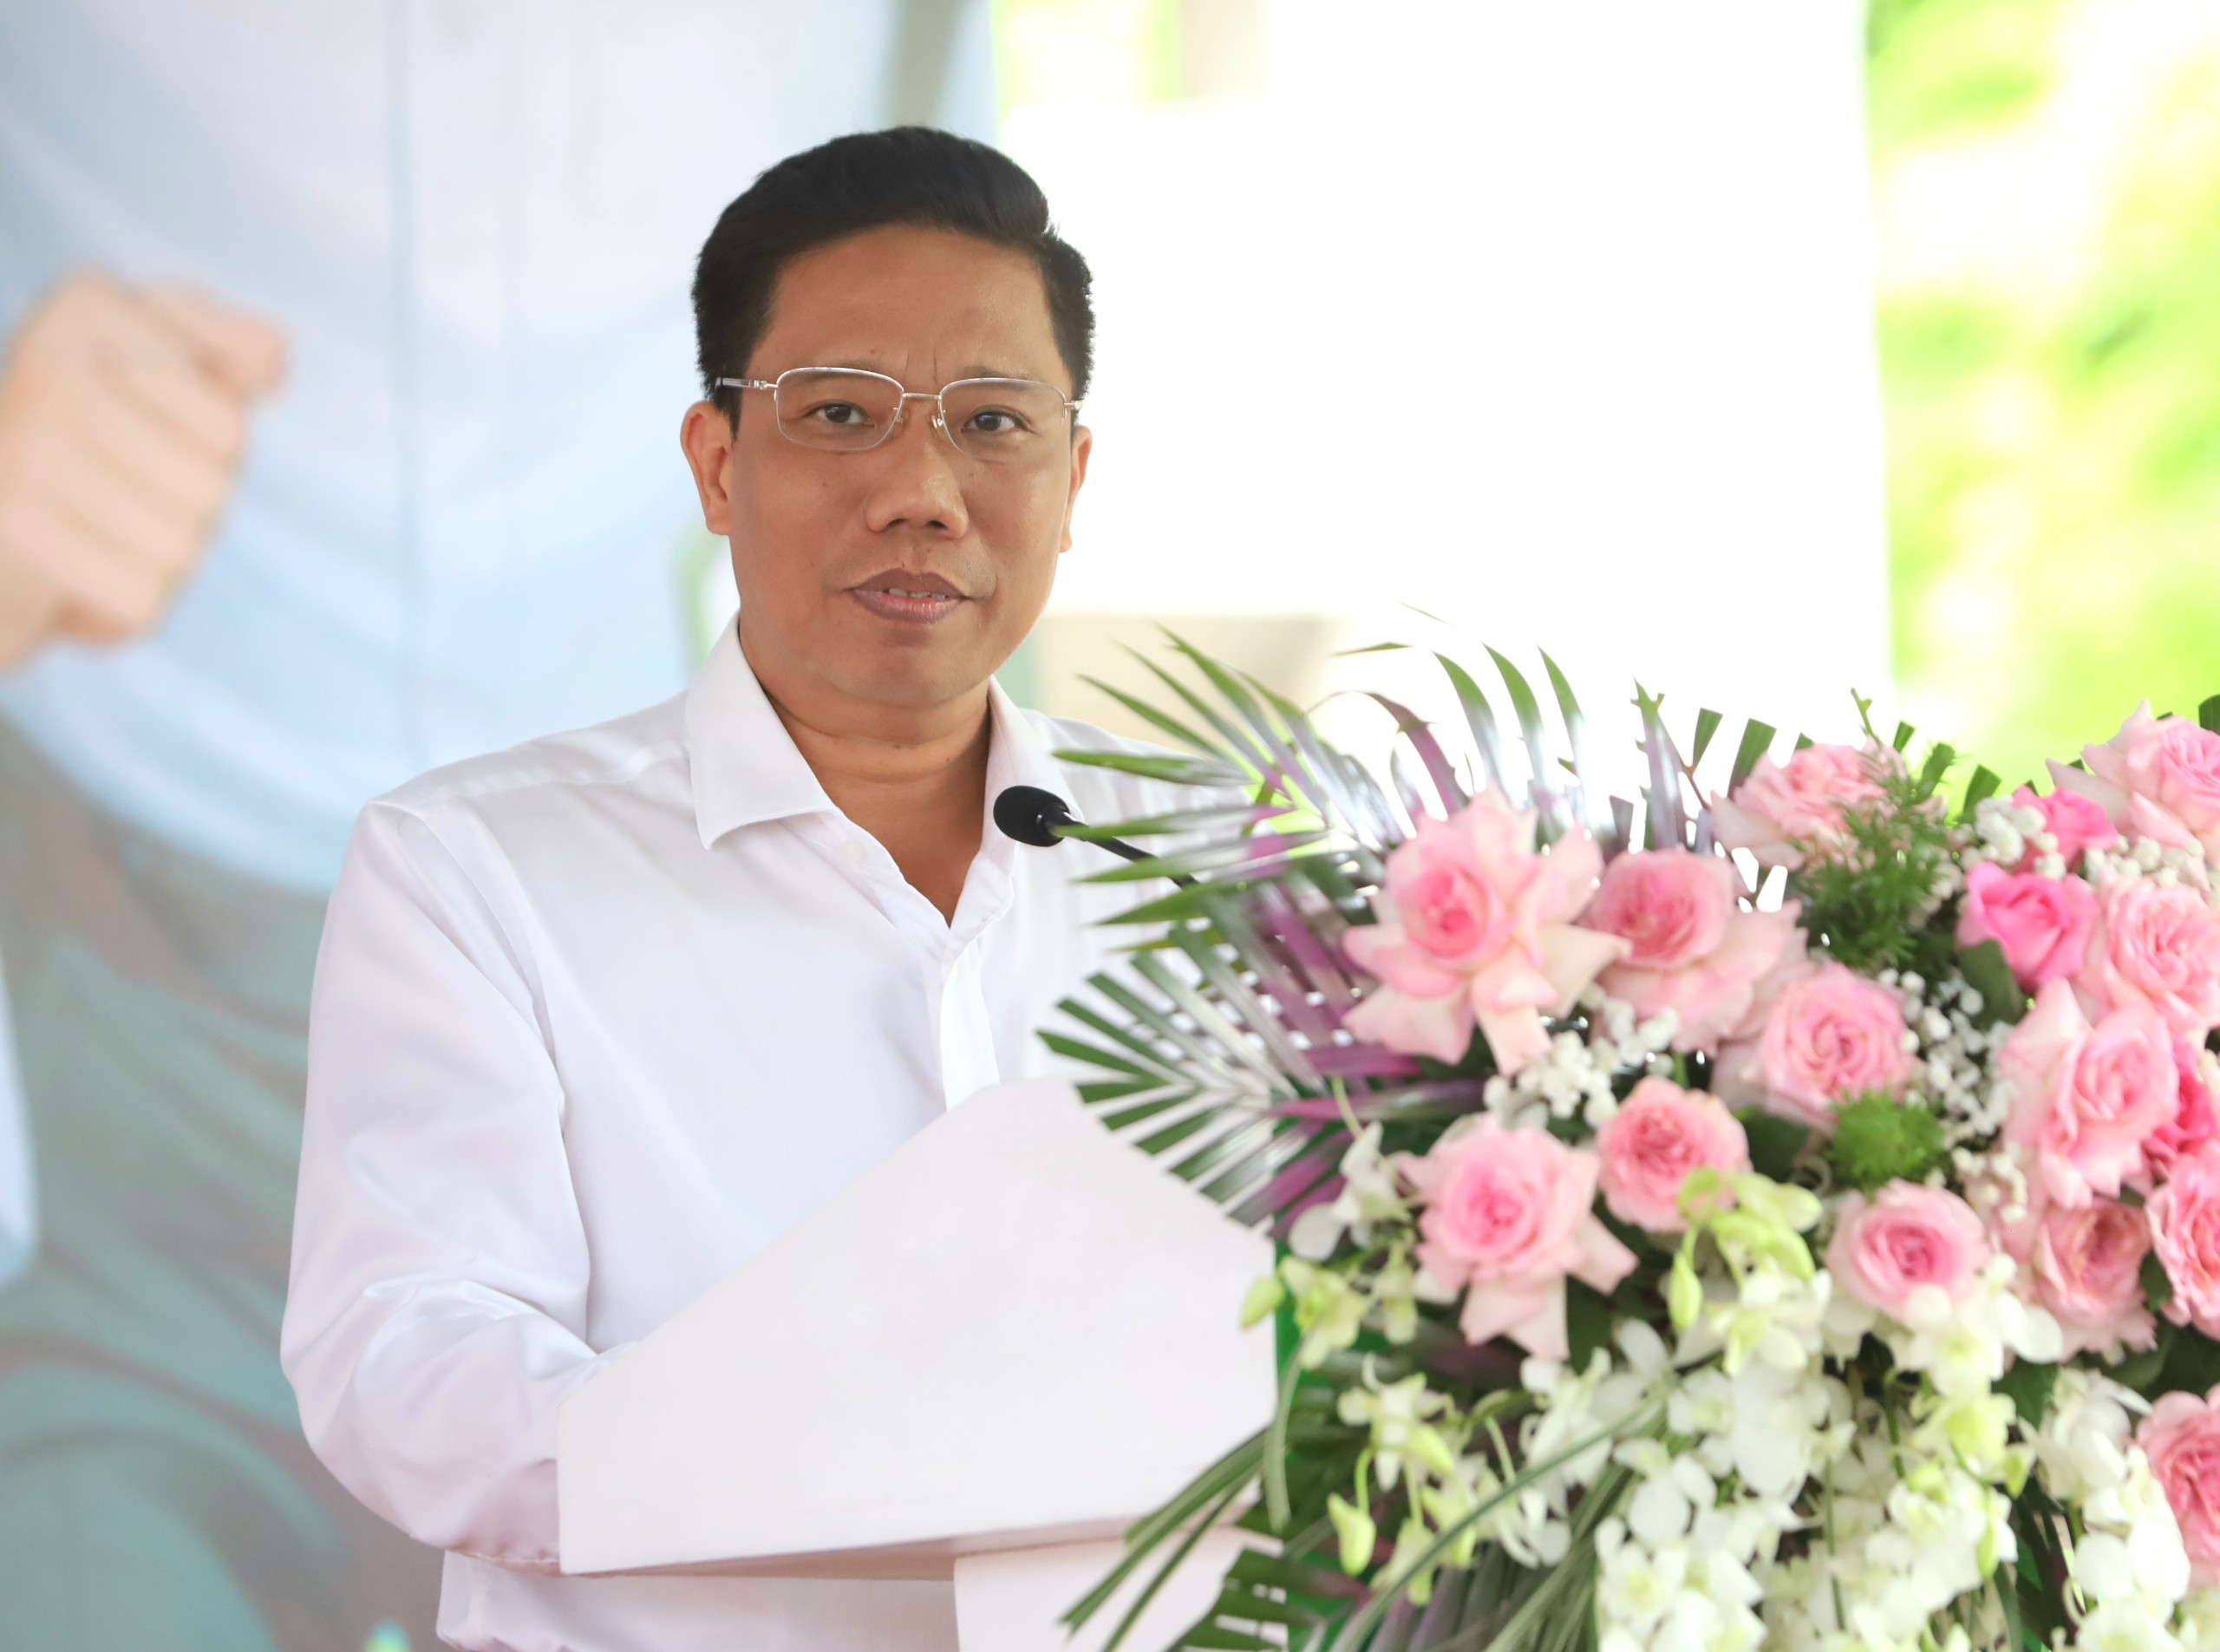 Ông Nguyễn Thực Hiện – Phó Chủ tịch UBND TP. Cần Thơ phát biểu chào mừng tại ngày hội.